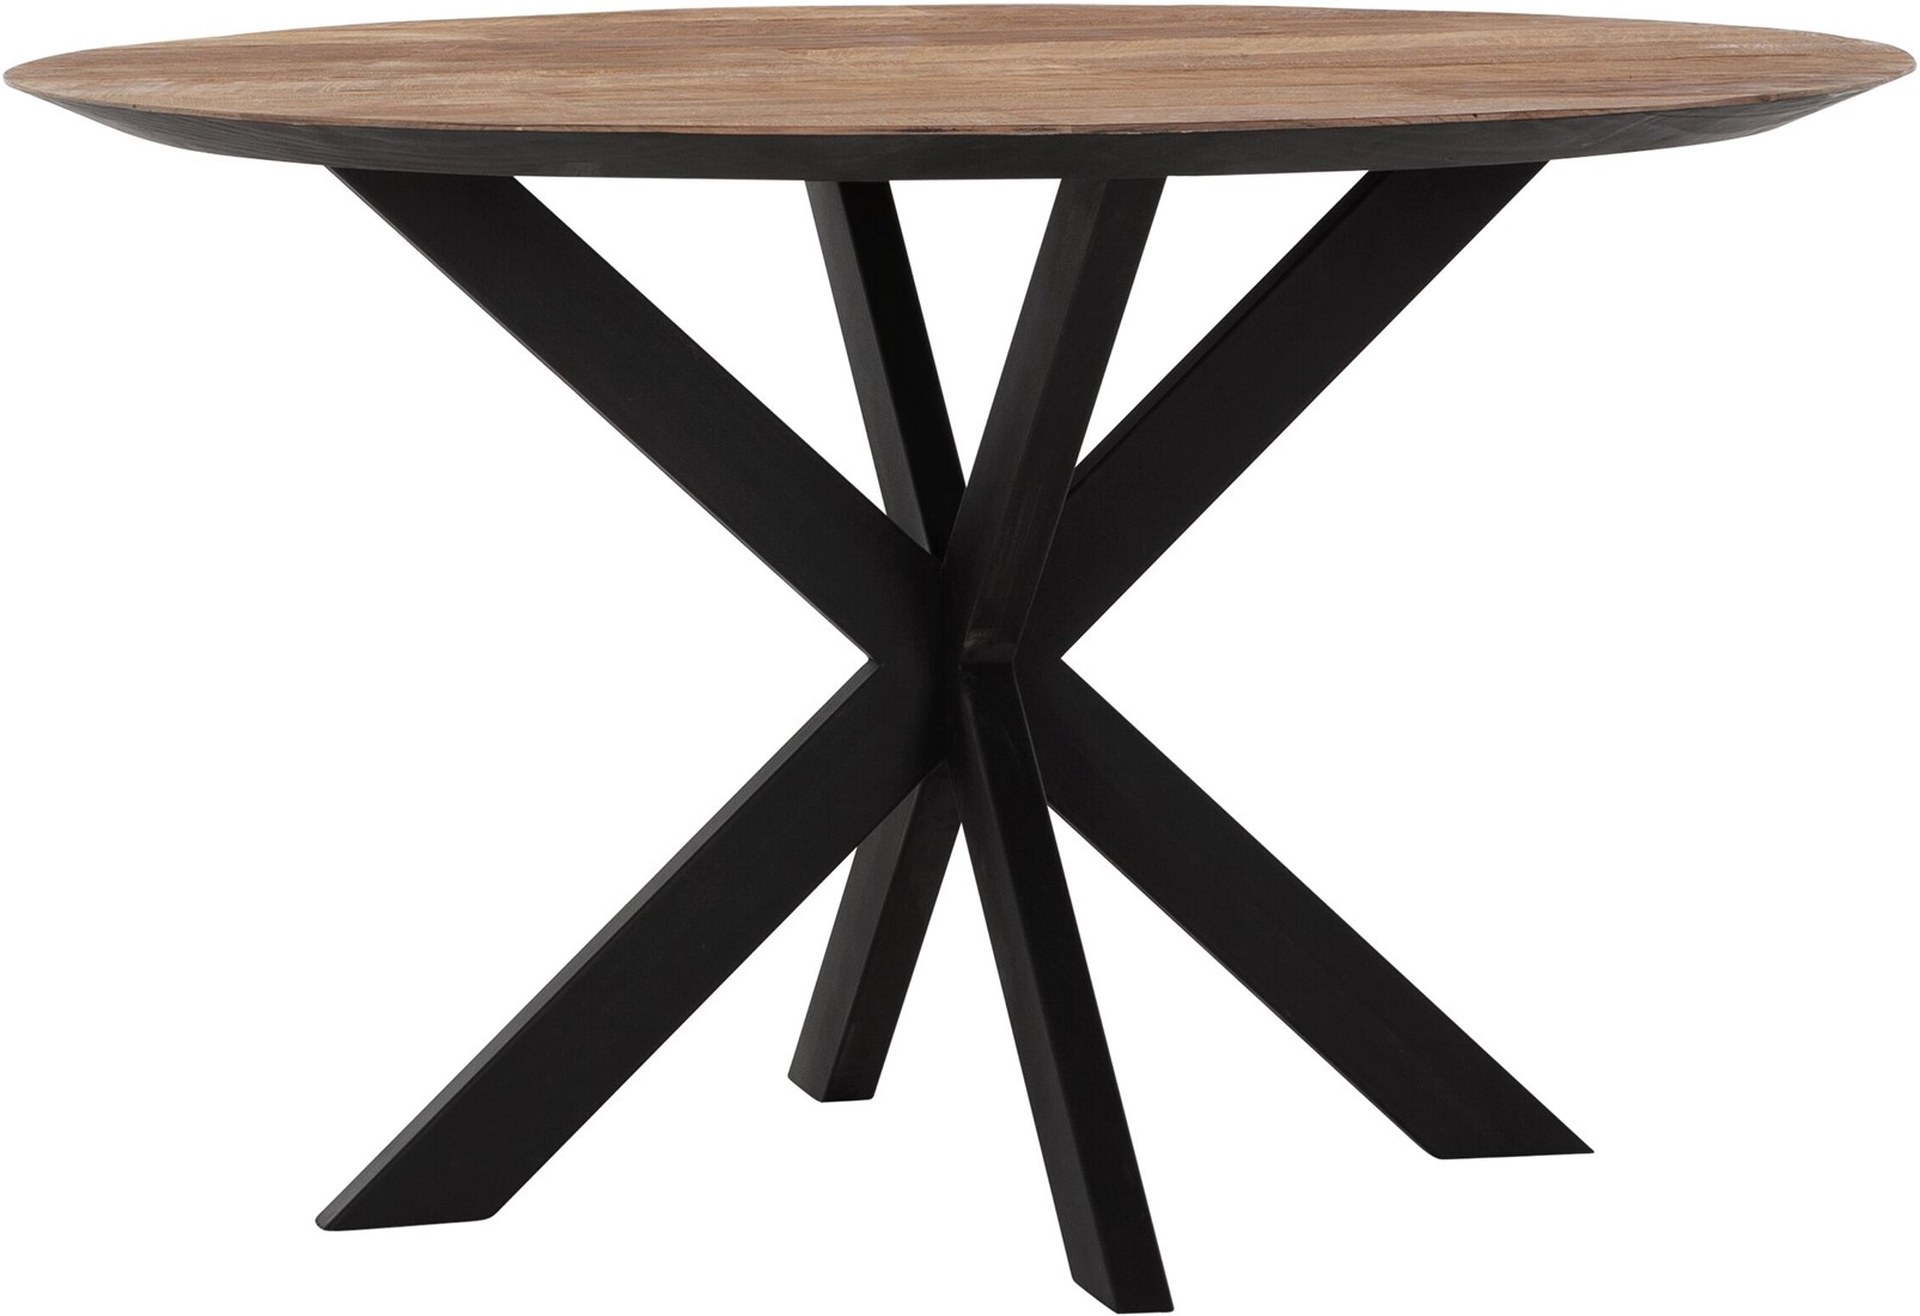 Der Esstisch Shape überzeugt mit seinem modernem aber auch massivem Design. Gefertigt wurde der Tisch aus recyceltem Teakholz, welches einen natürlichen Farbton besitzt. Das Gestell ist aus Metall und ist Schwarz. Der Tisch hat einen Durchmesser von 130 c